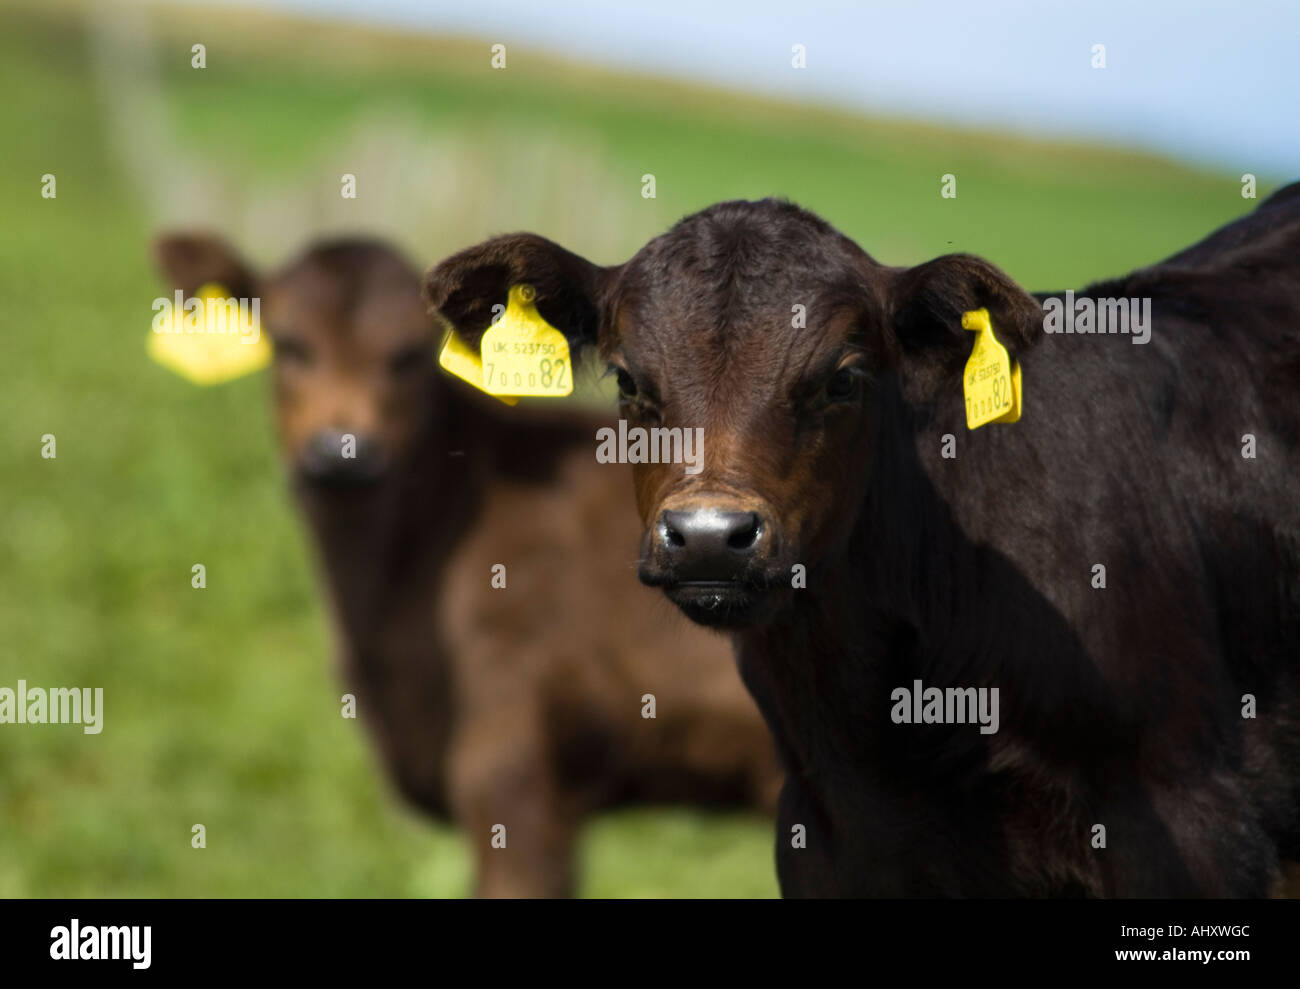 dh Calf COW UK mollets à face brune vaches à face croisée vaches étiquettes agronomie enregistrer contrôle ID identification d'animal Banque D'Images